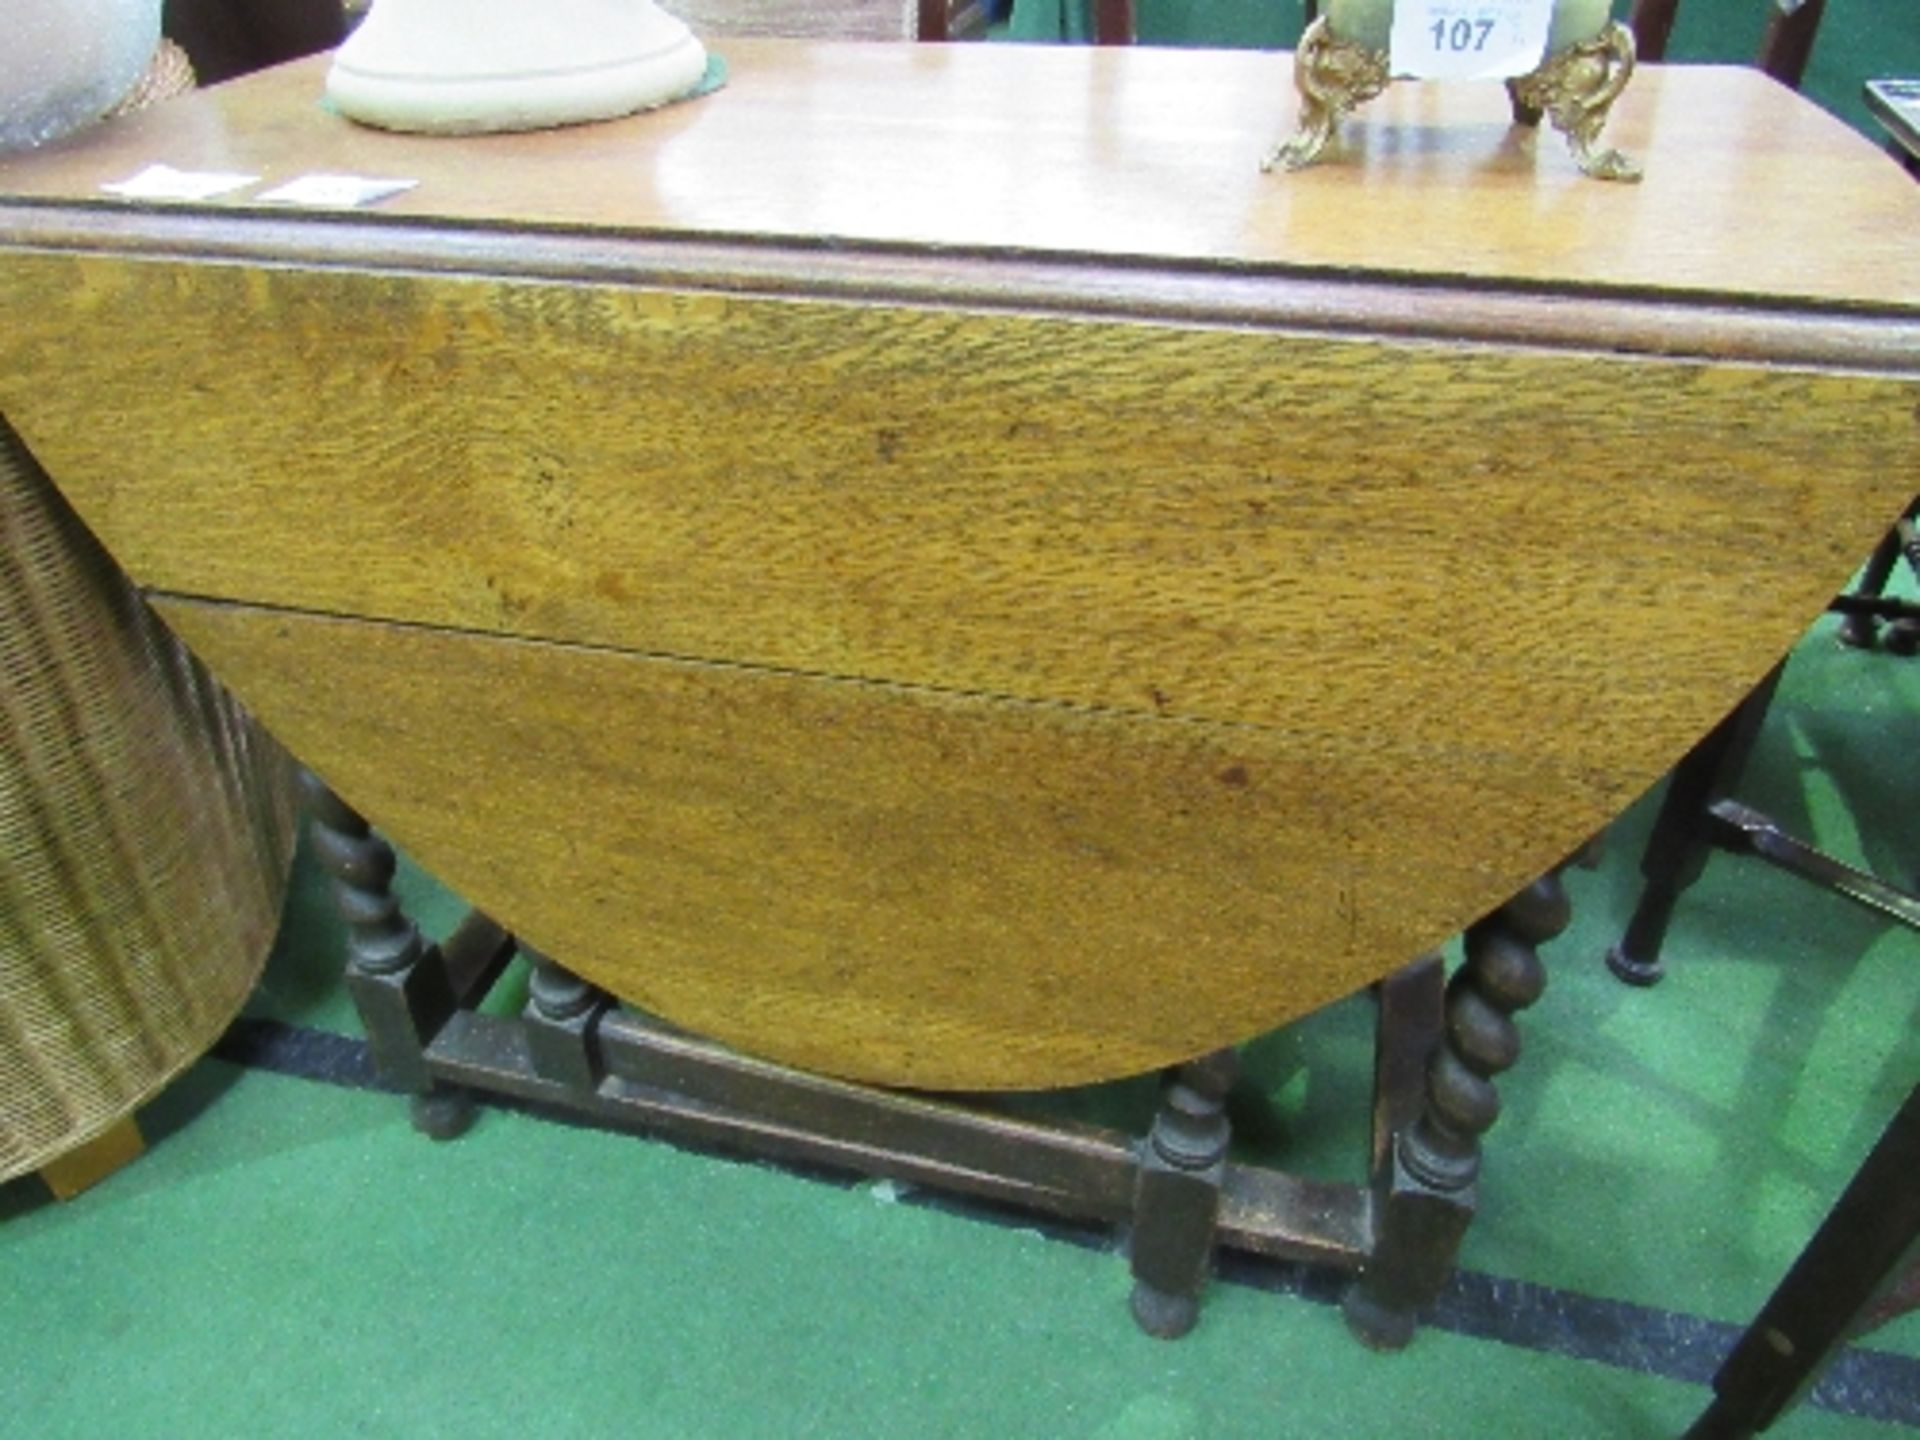 Oak gate-leg table on barley twist legs, 135cms (open) x 92cms. Estimate £20-40 - Image 3 of 3